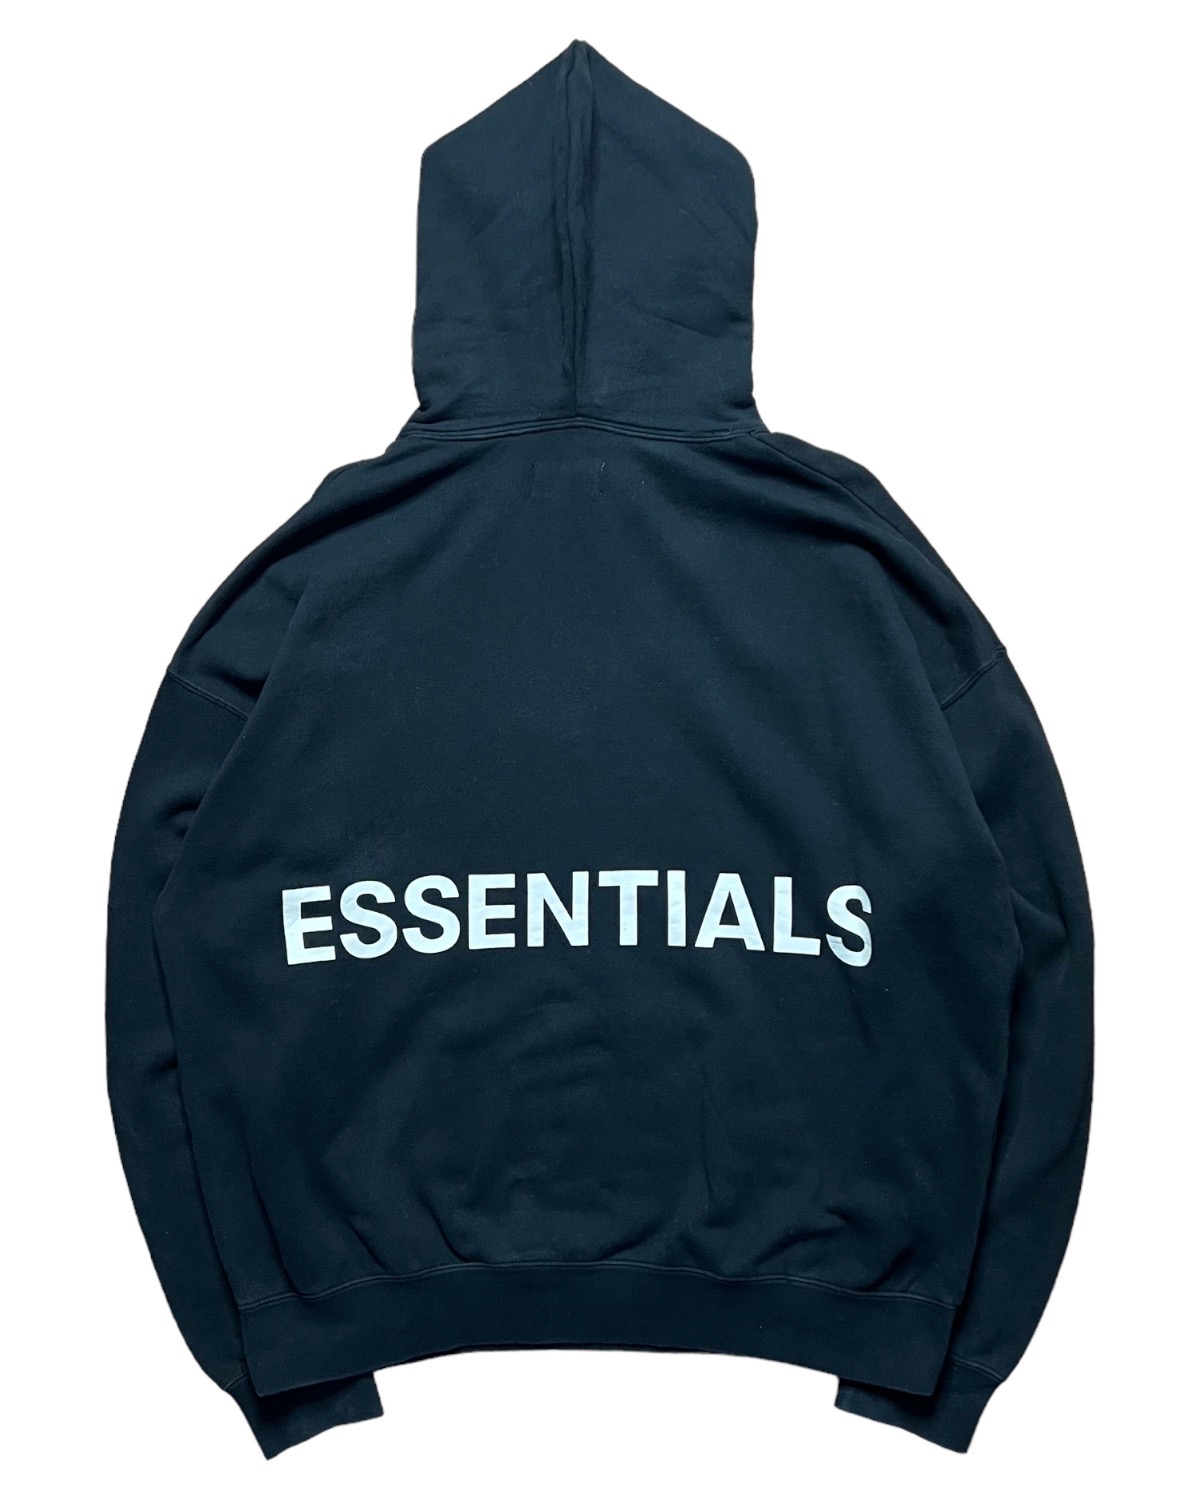 SS18 Essentials by fog Back logo hoodie